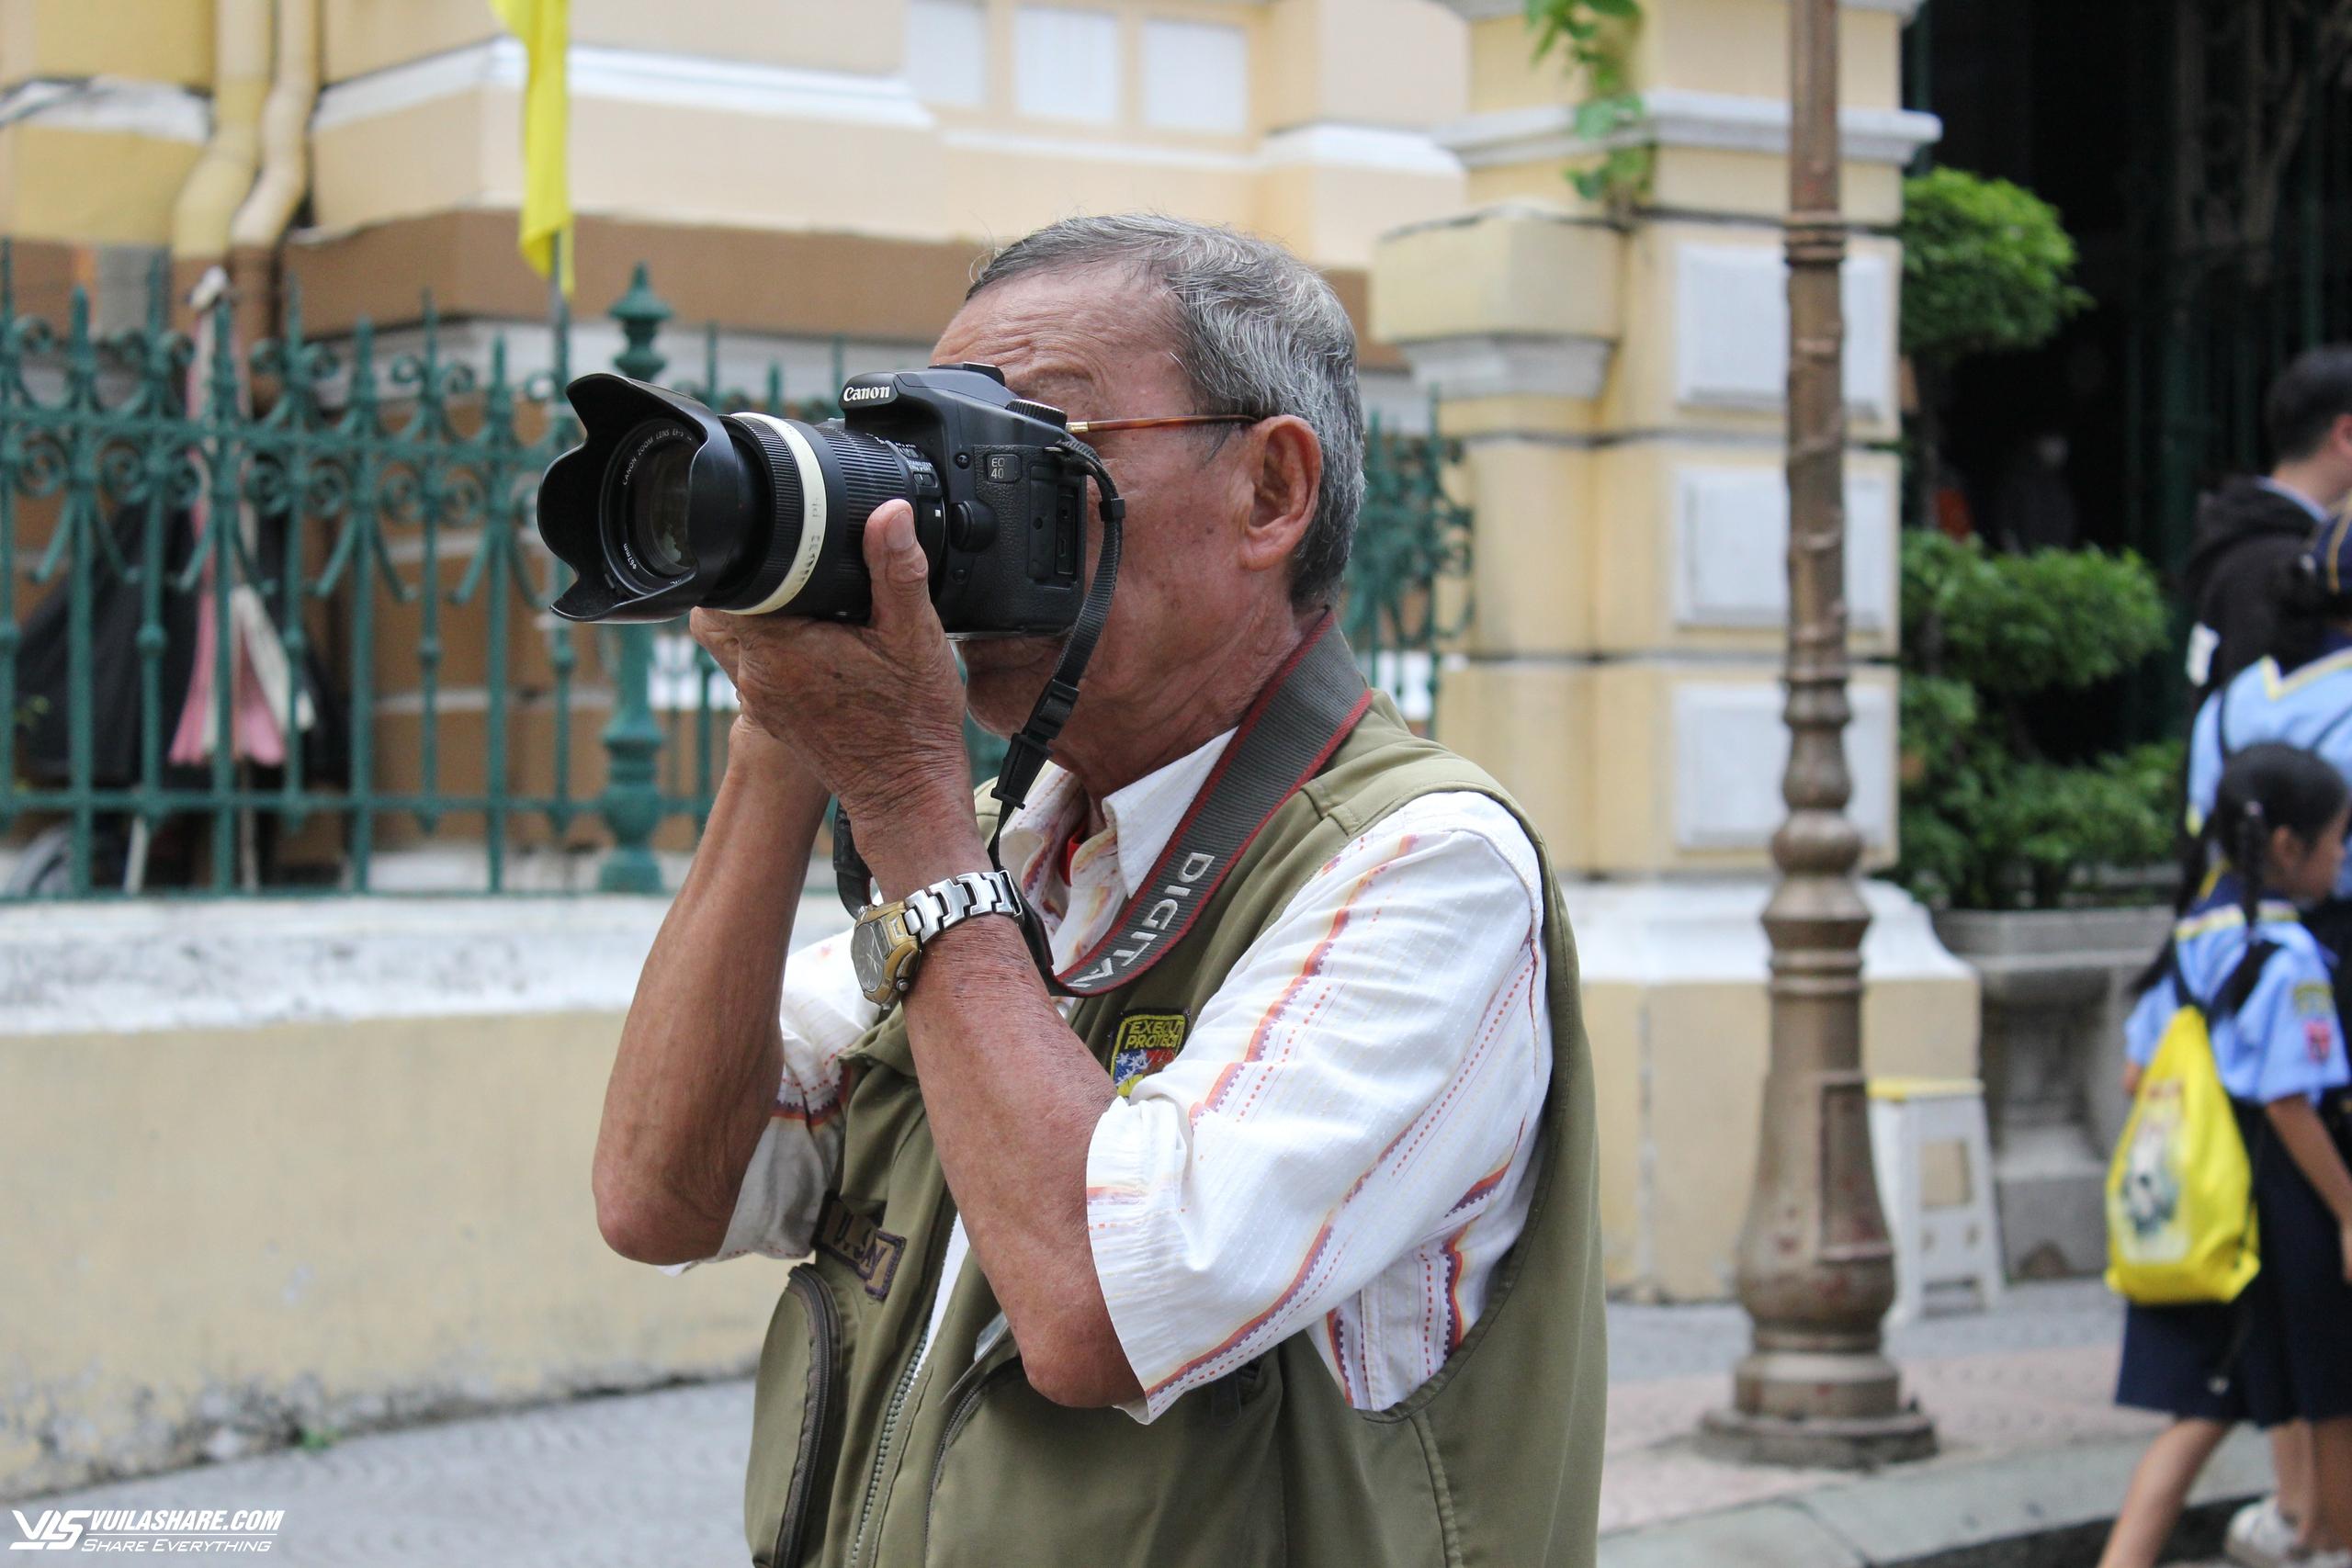 Ông Diên là thợ ảnh lớn tuổi nhất trong nhóm thợ ở khu vực Bưu điện thành phố hiện nay